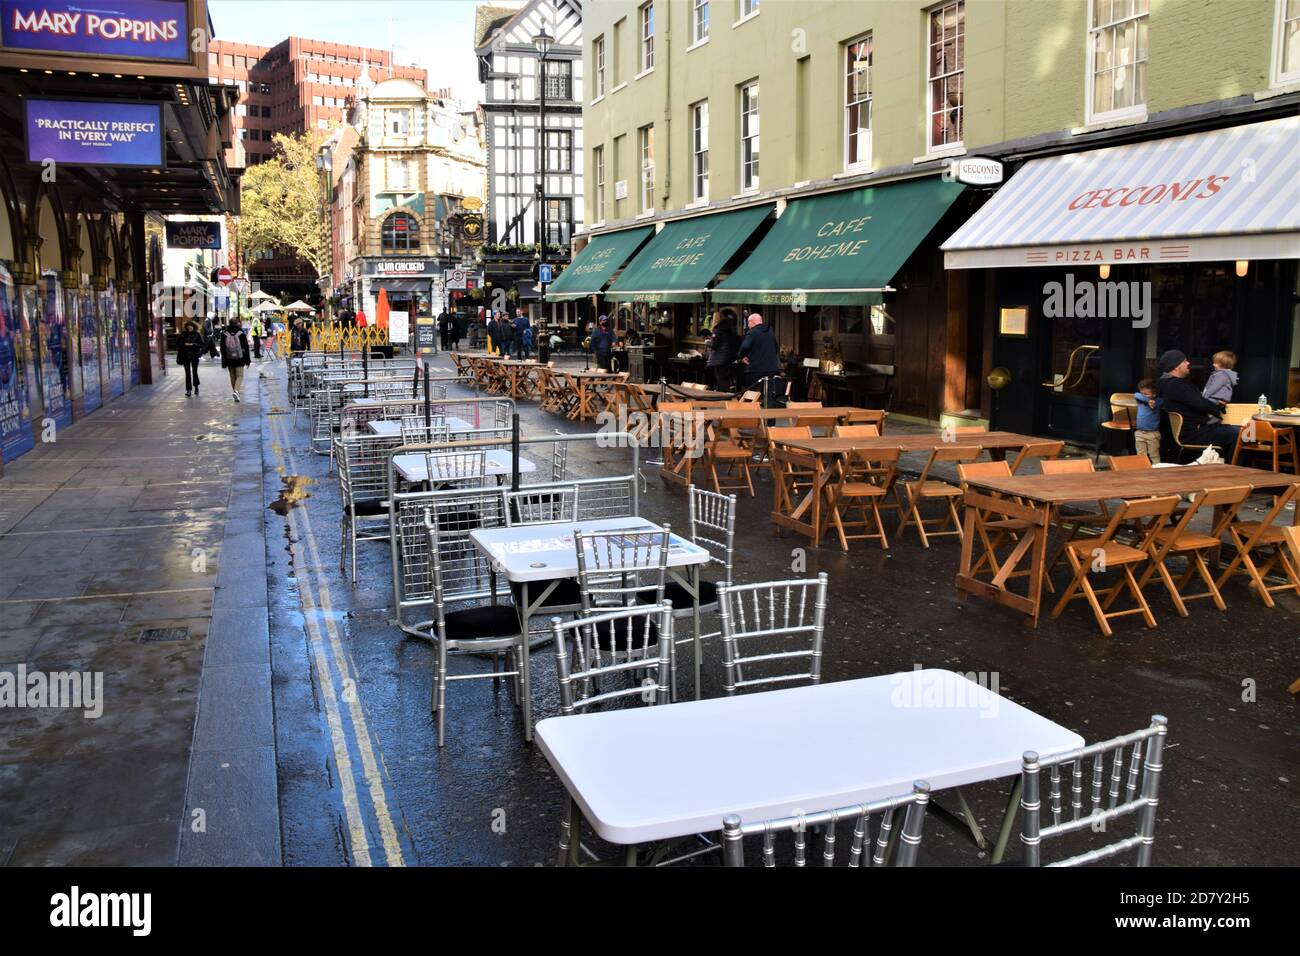 Leere Tische warten auf Kunden in der Old Compton Street, Soho. Neue Beschränkungen haben dazu geführt, dass weniger Kunden Restaurants und Bars in London besuchen. Stockfoto